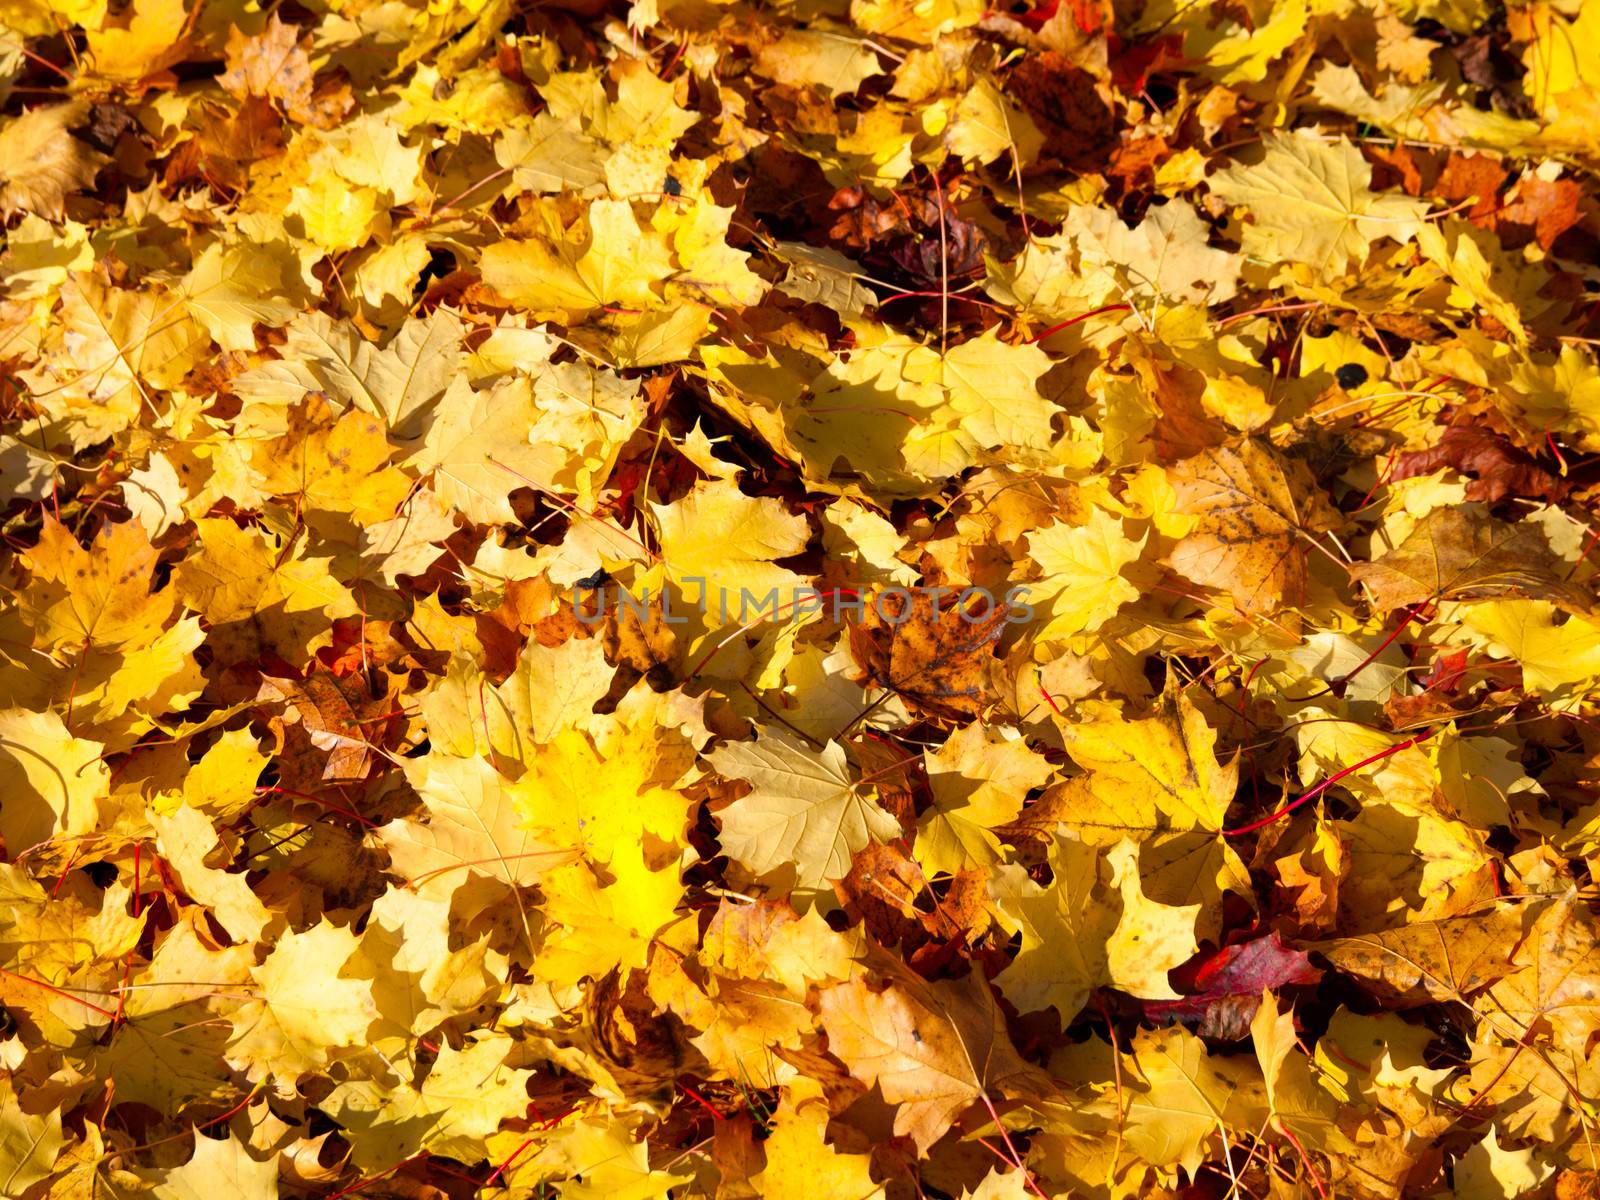 Watercolor Fall Leaves by motorolka